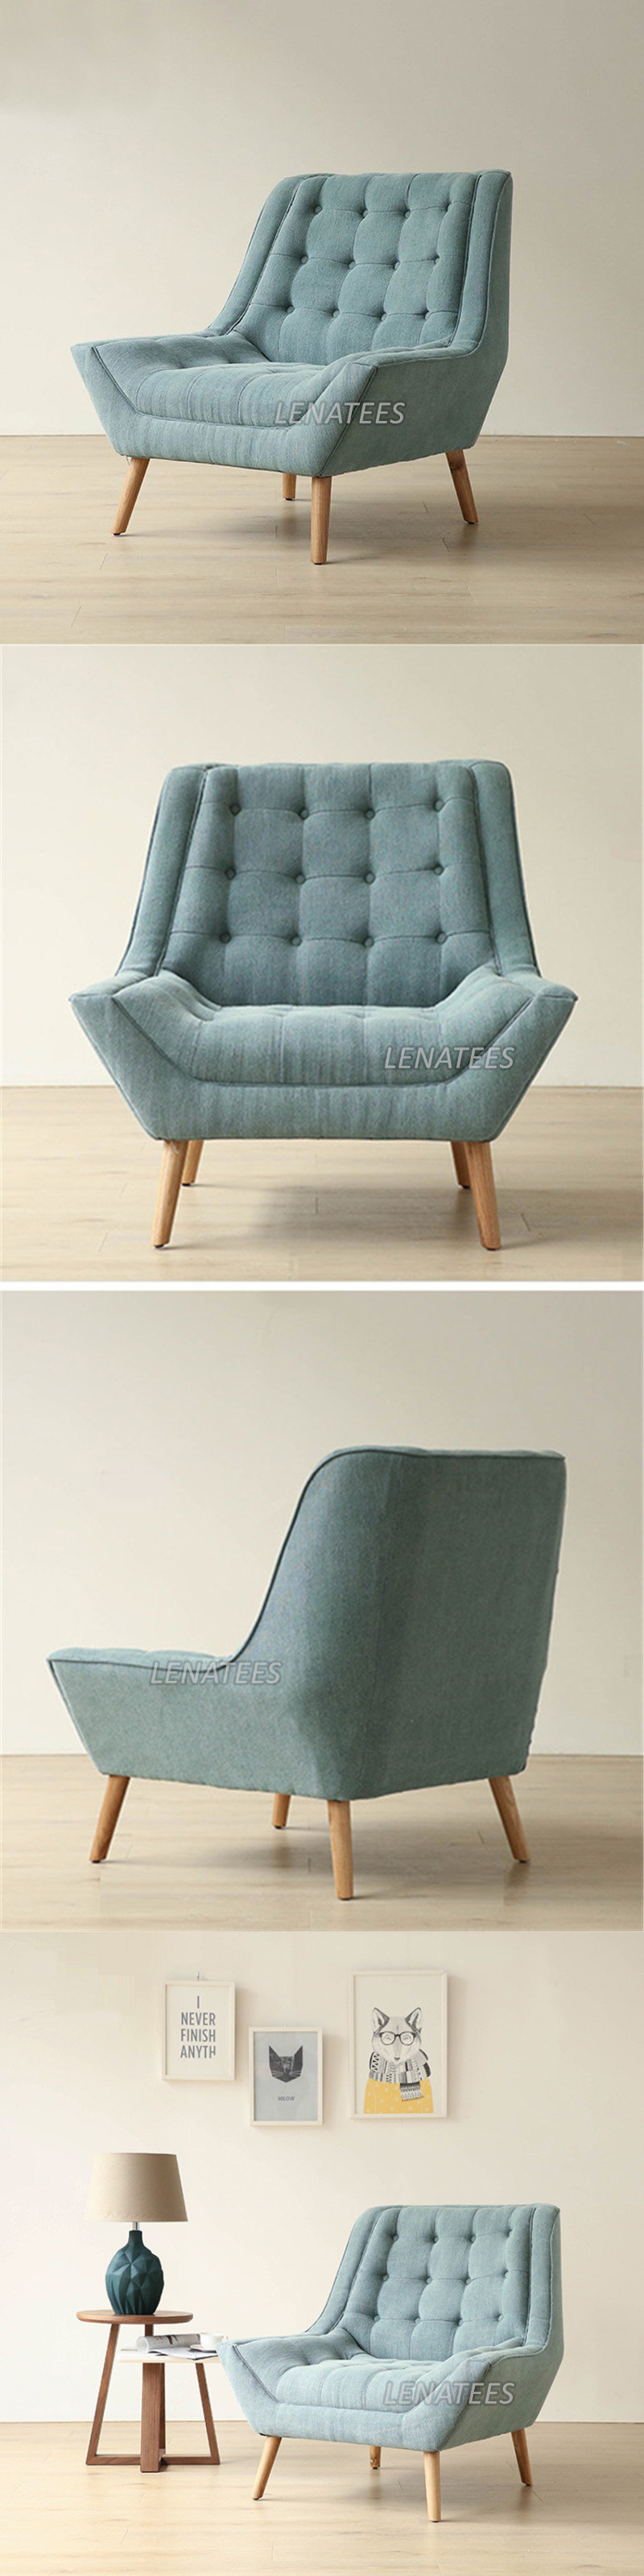 DC1018 European Furniture Living Room Chair Lounge Chair